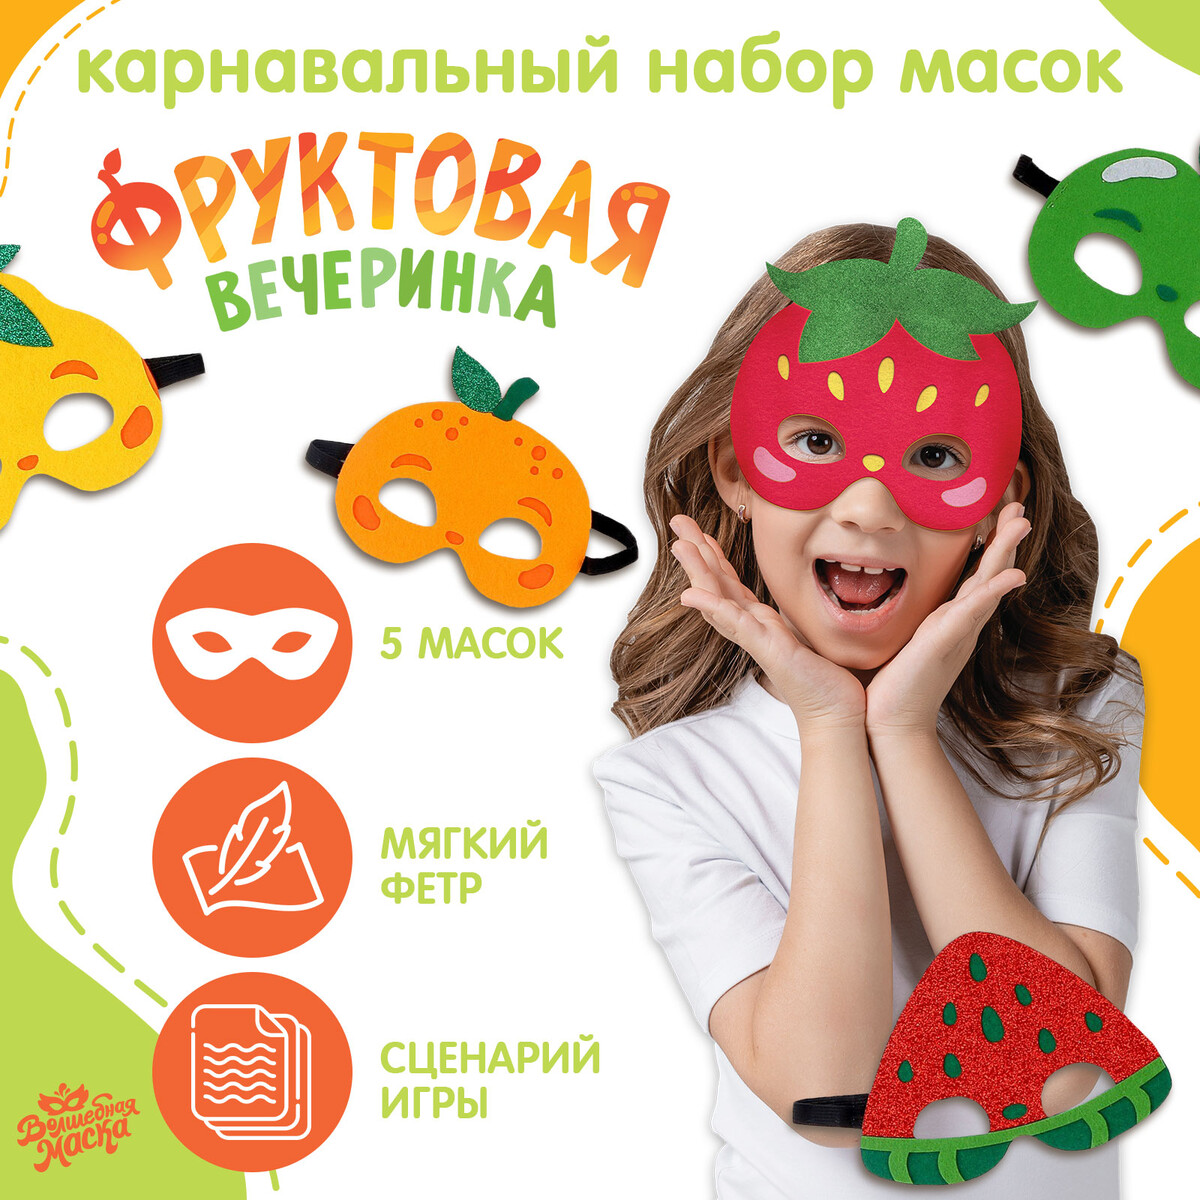 Карнавальный набор масок новогодний набор из 10 масок для лица farmstay с экстрактом персика